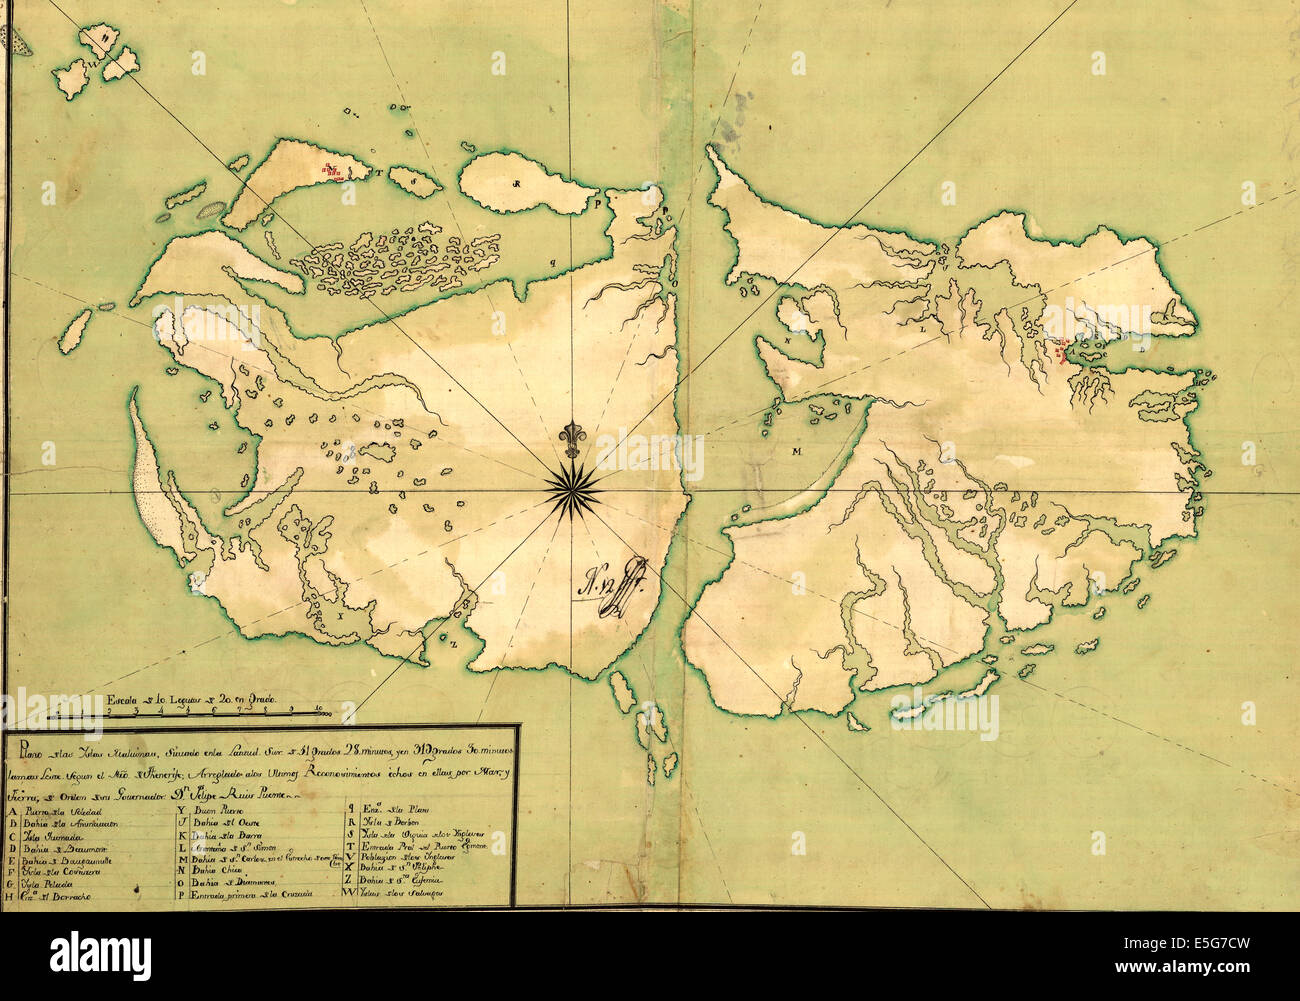 La carte des îles Falkland, ou les îles Malvinas, vers 1700 Banque D'Images